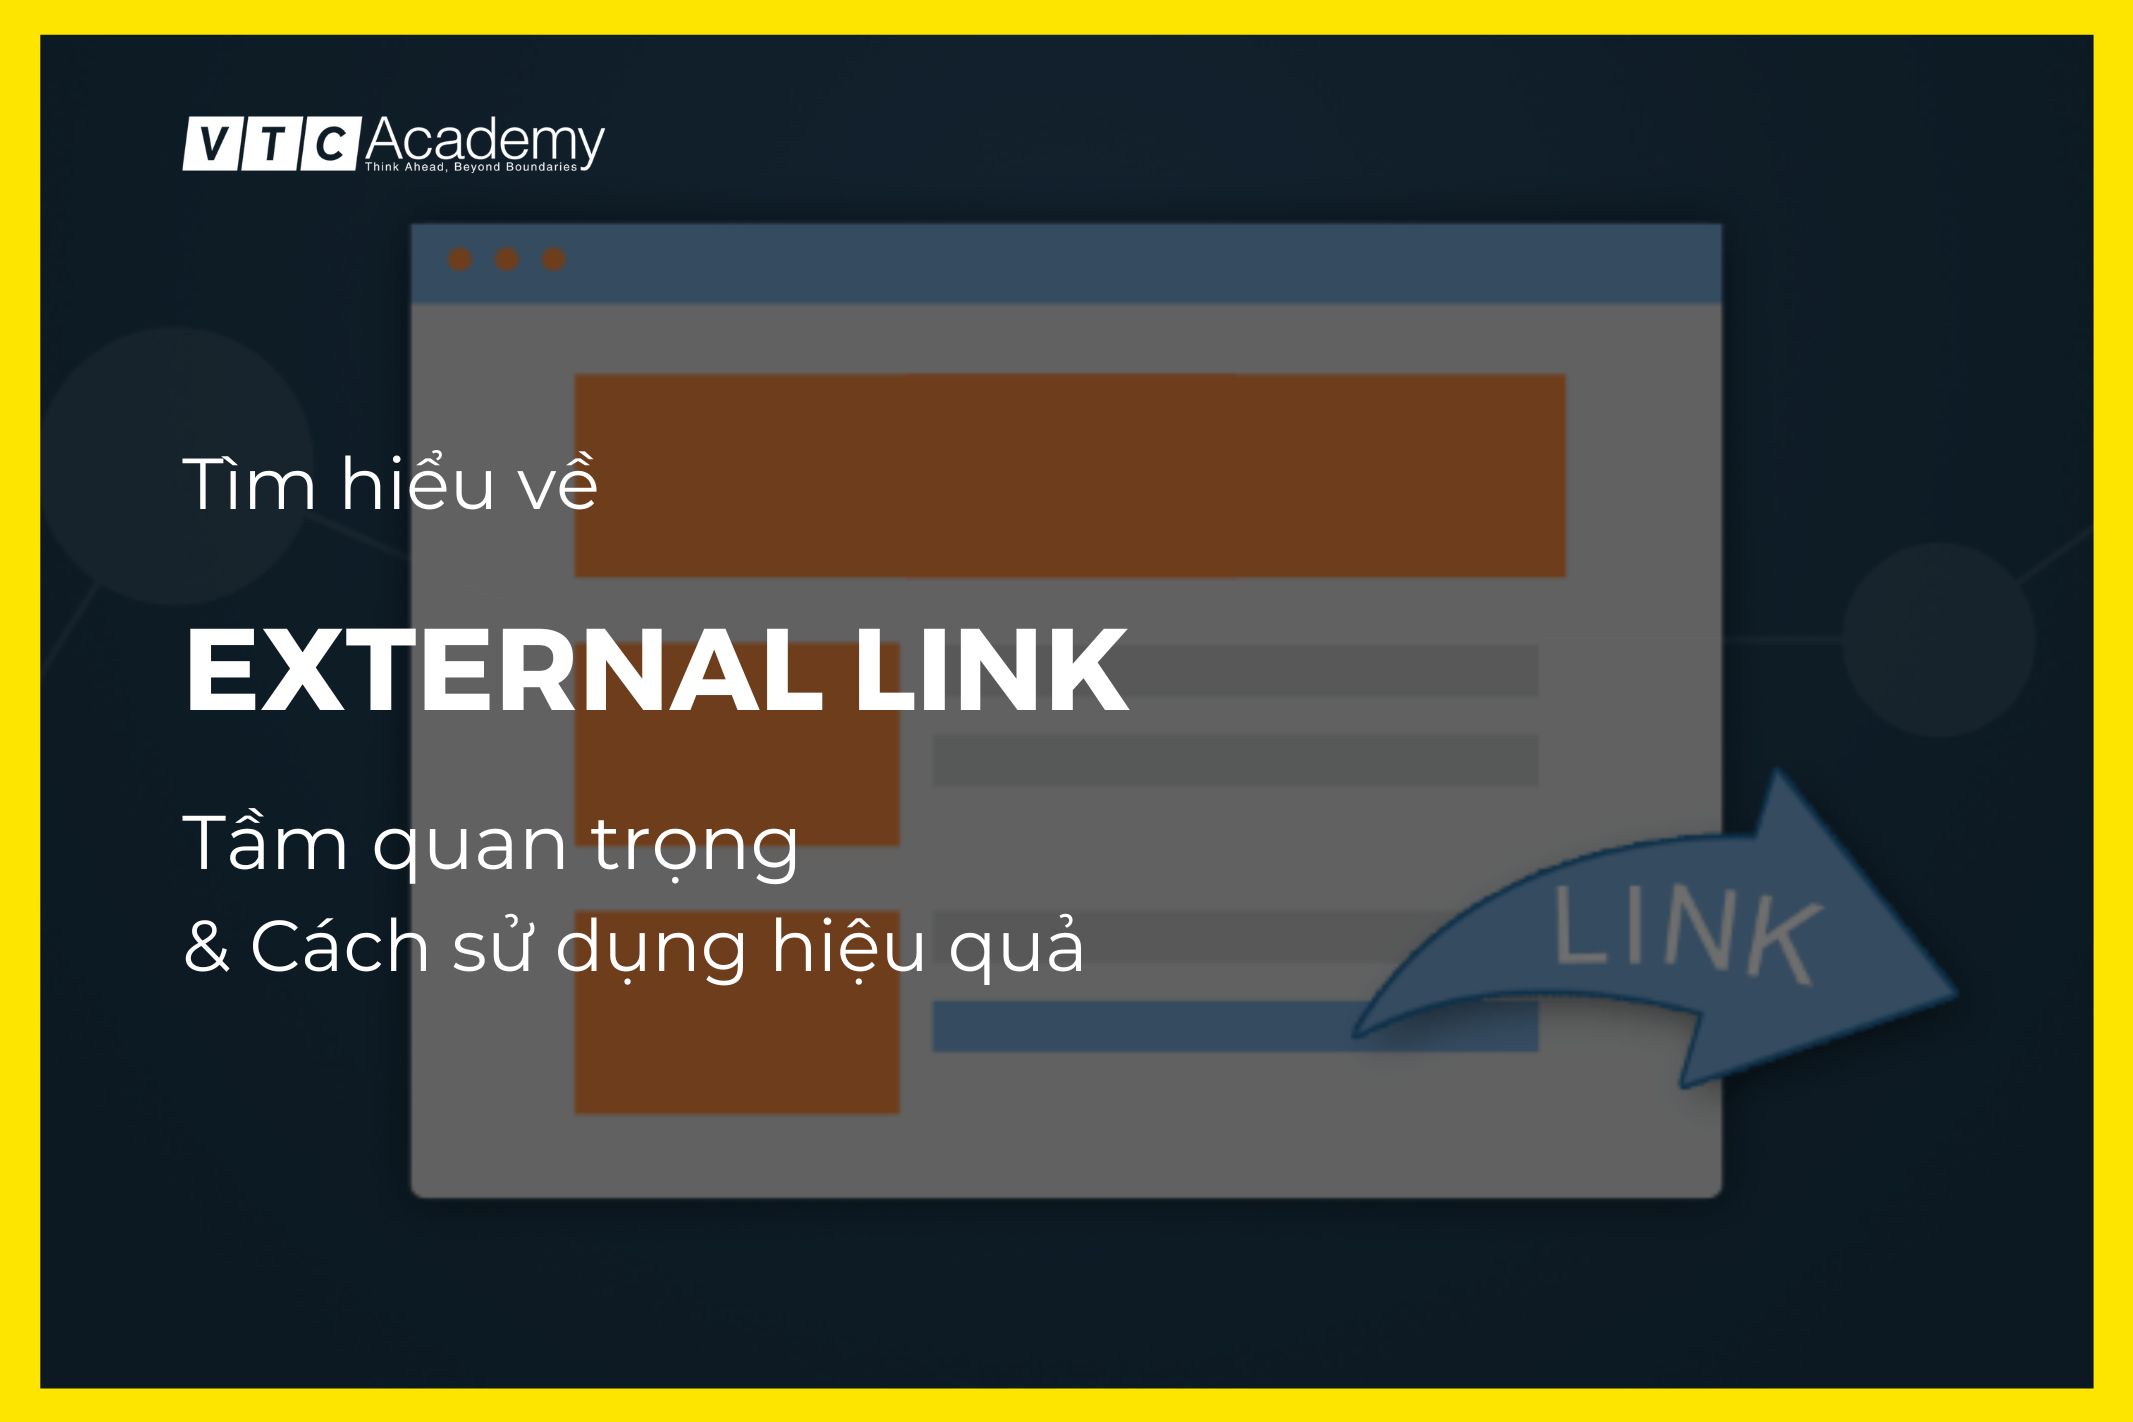 External Link là gì? Tầm quan trọng và cách sử dụng External Link hiệu quả trong chiến lược SEO